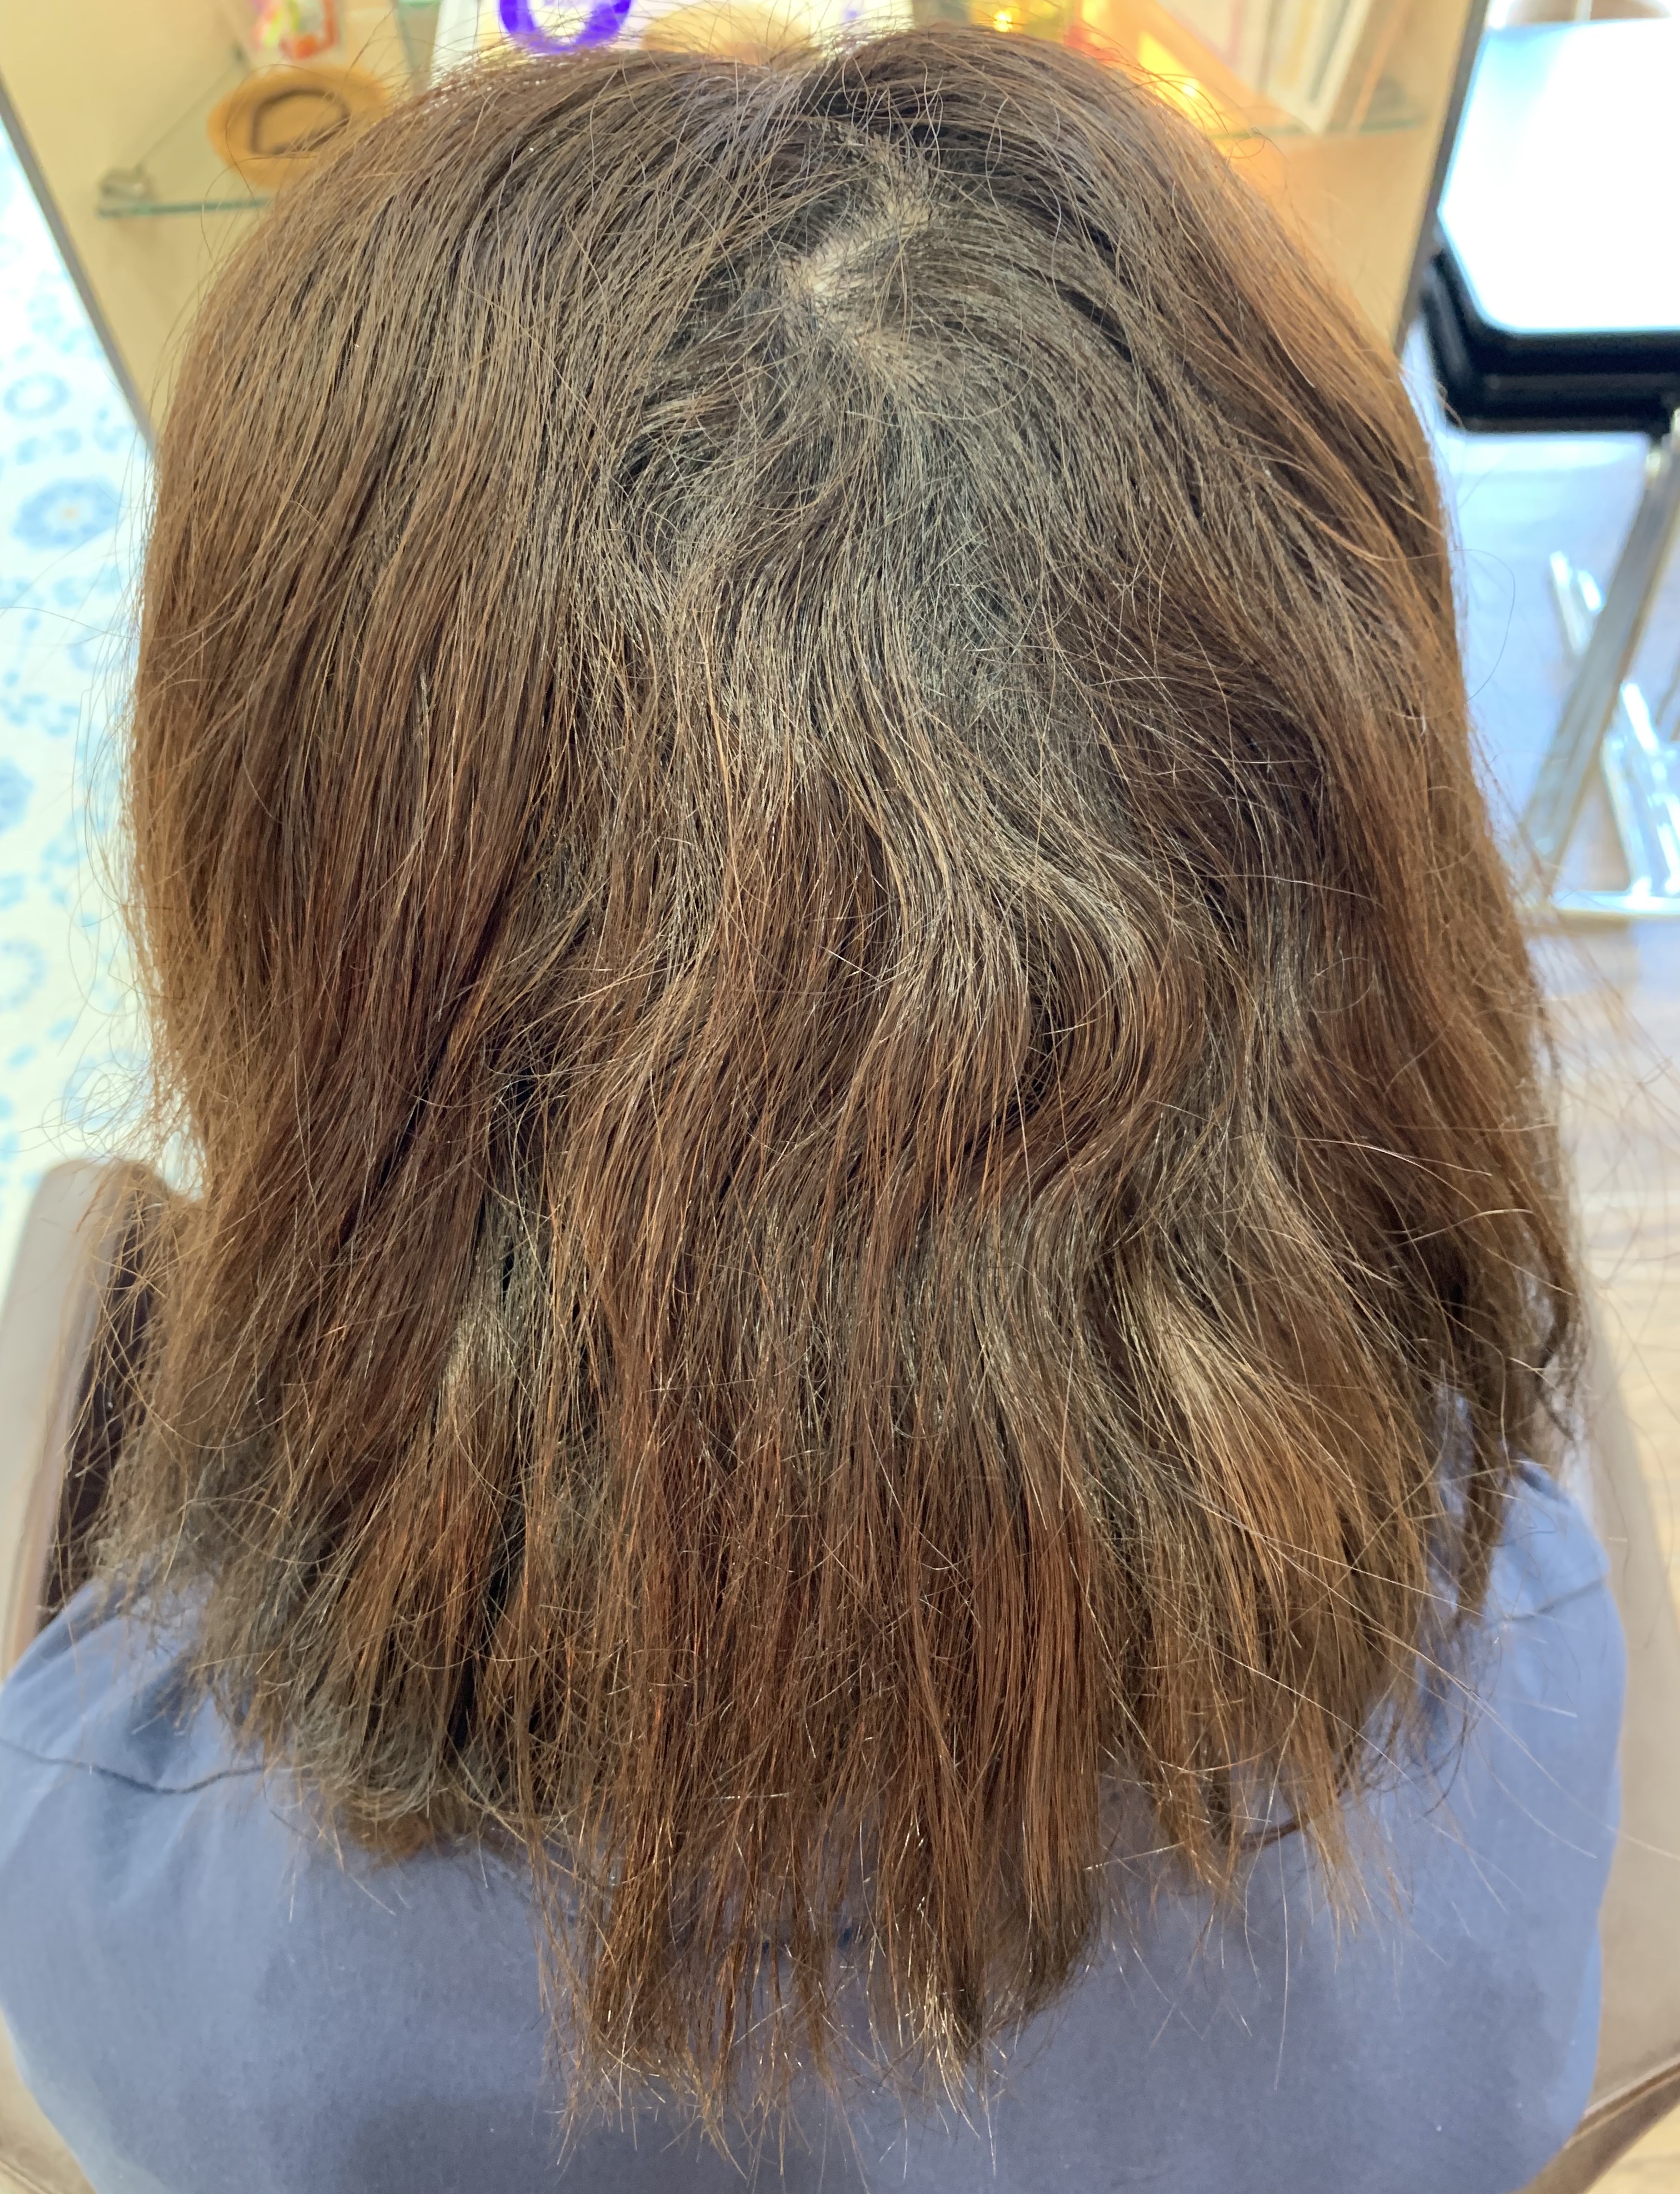 梅雨のせい 年齢のせい 私の髪このままうねり続けるの ブログ 銀座美容室カロン銀座 Calon ヘアカラーサロン